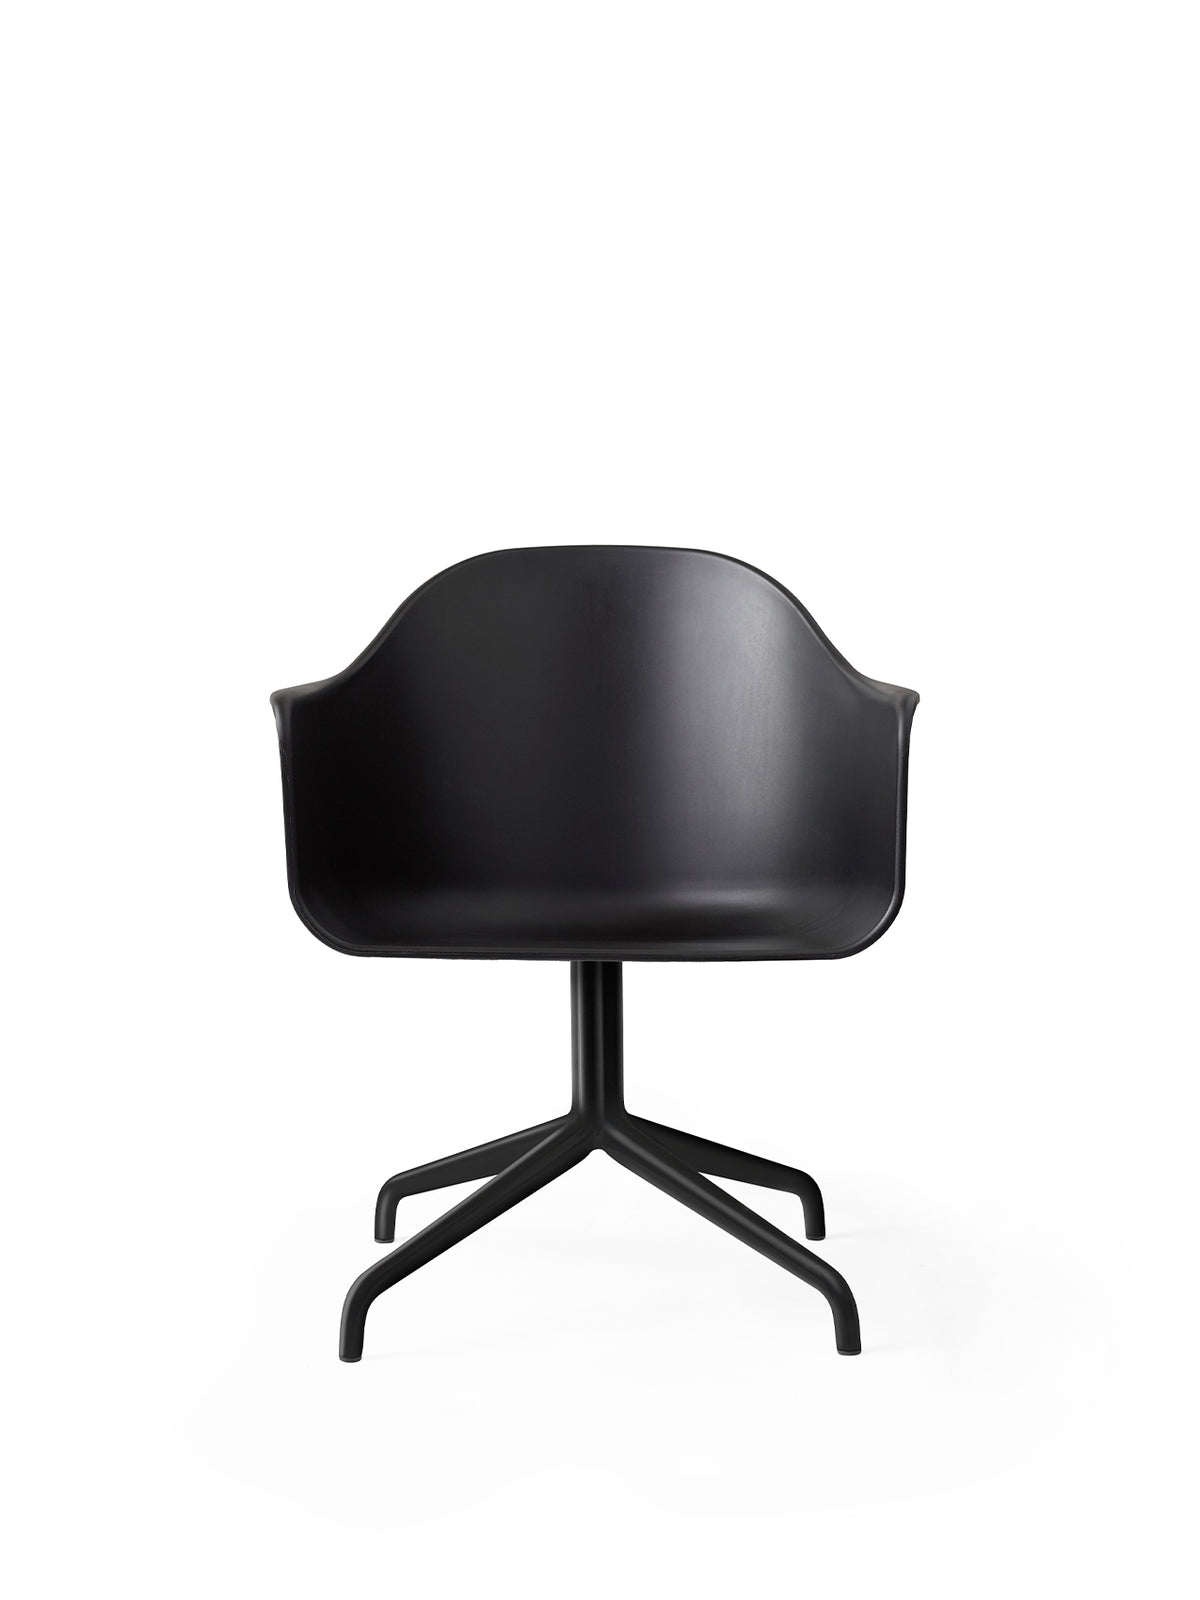 Harbour Arm Chair - Black Star Base by Audo Copenhagen